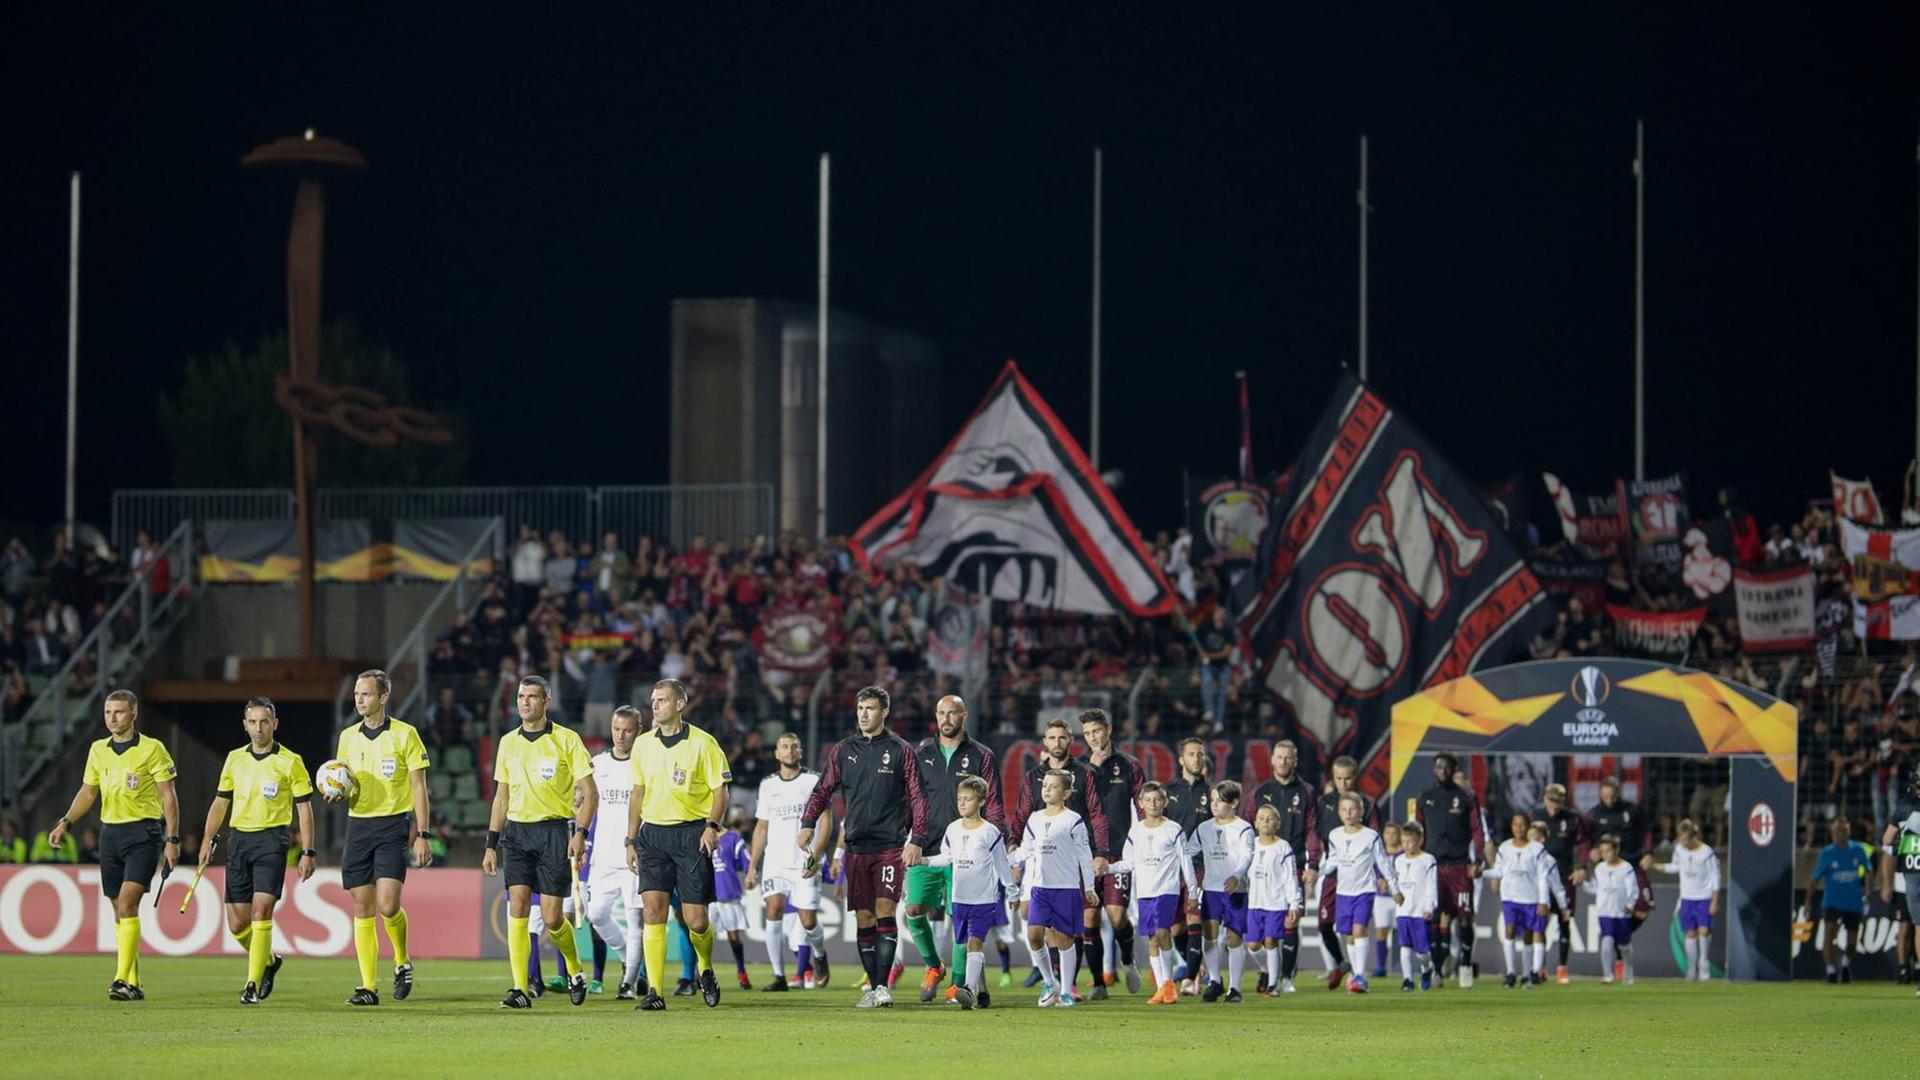 Fünf Schiedsrichter laufen vor den Mannschaften des F91 Düdelingen und des AC Mailand auf den Rasen eines Fußballstadions